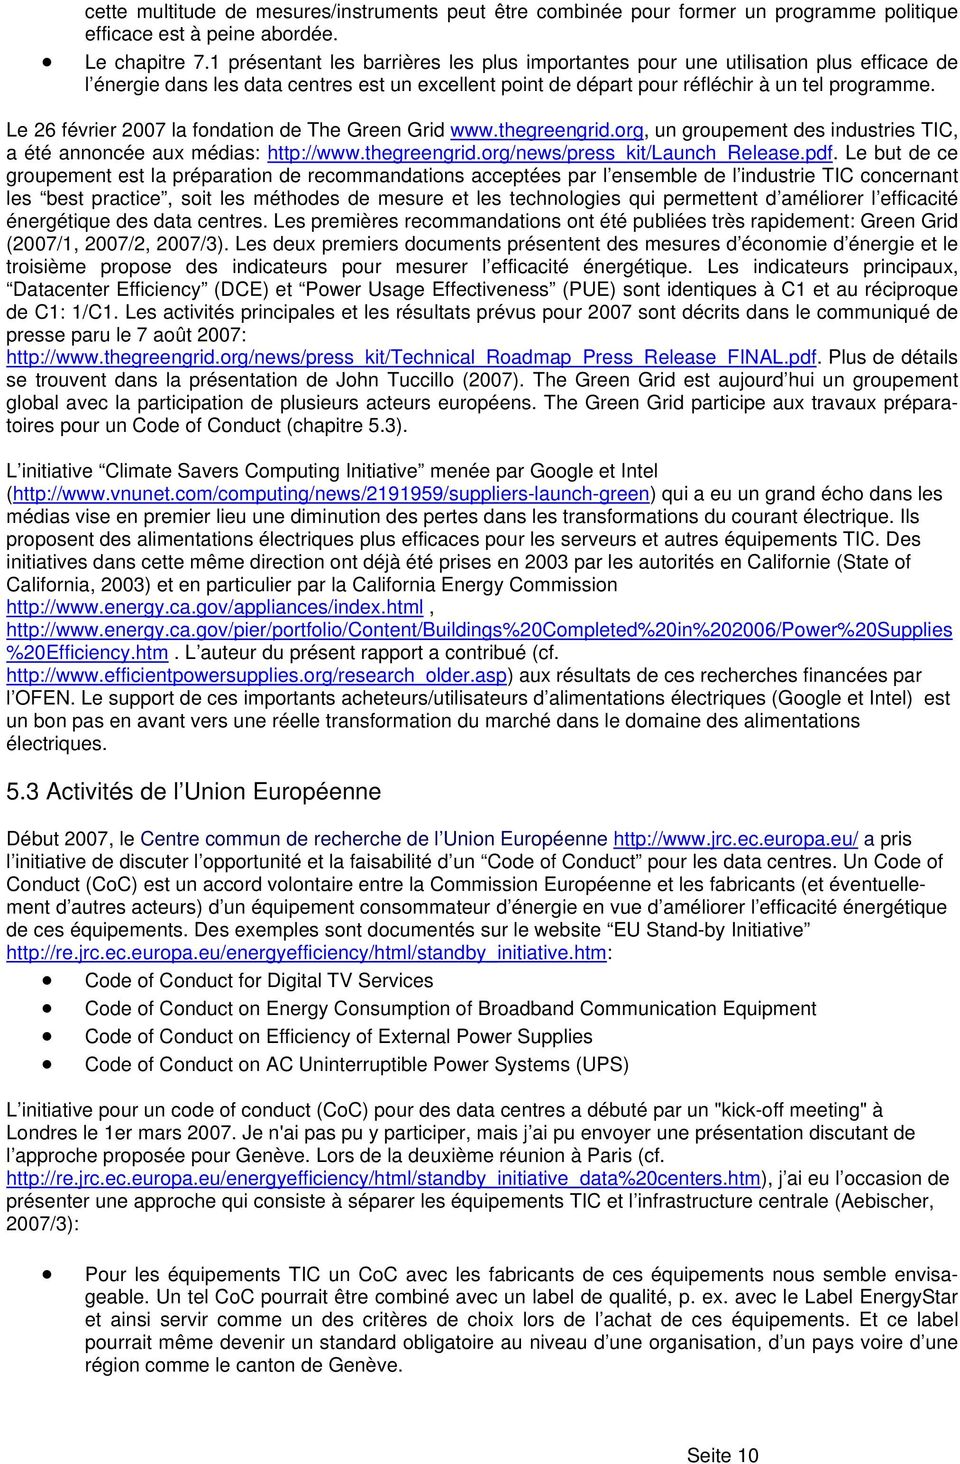 Le 26 février 2007 la fondation de The Green Grid www.thegreengrid.org, un groupement des industries TIC, a été annoncée aux médias: http://www.thegreengrid.org/news/press_kit/launch_release.pdf.